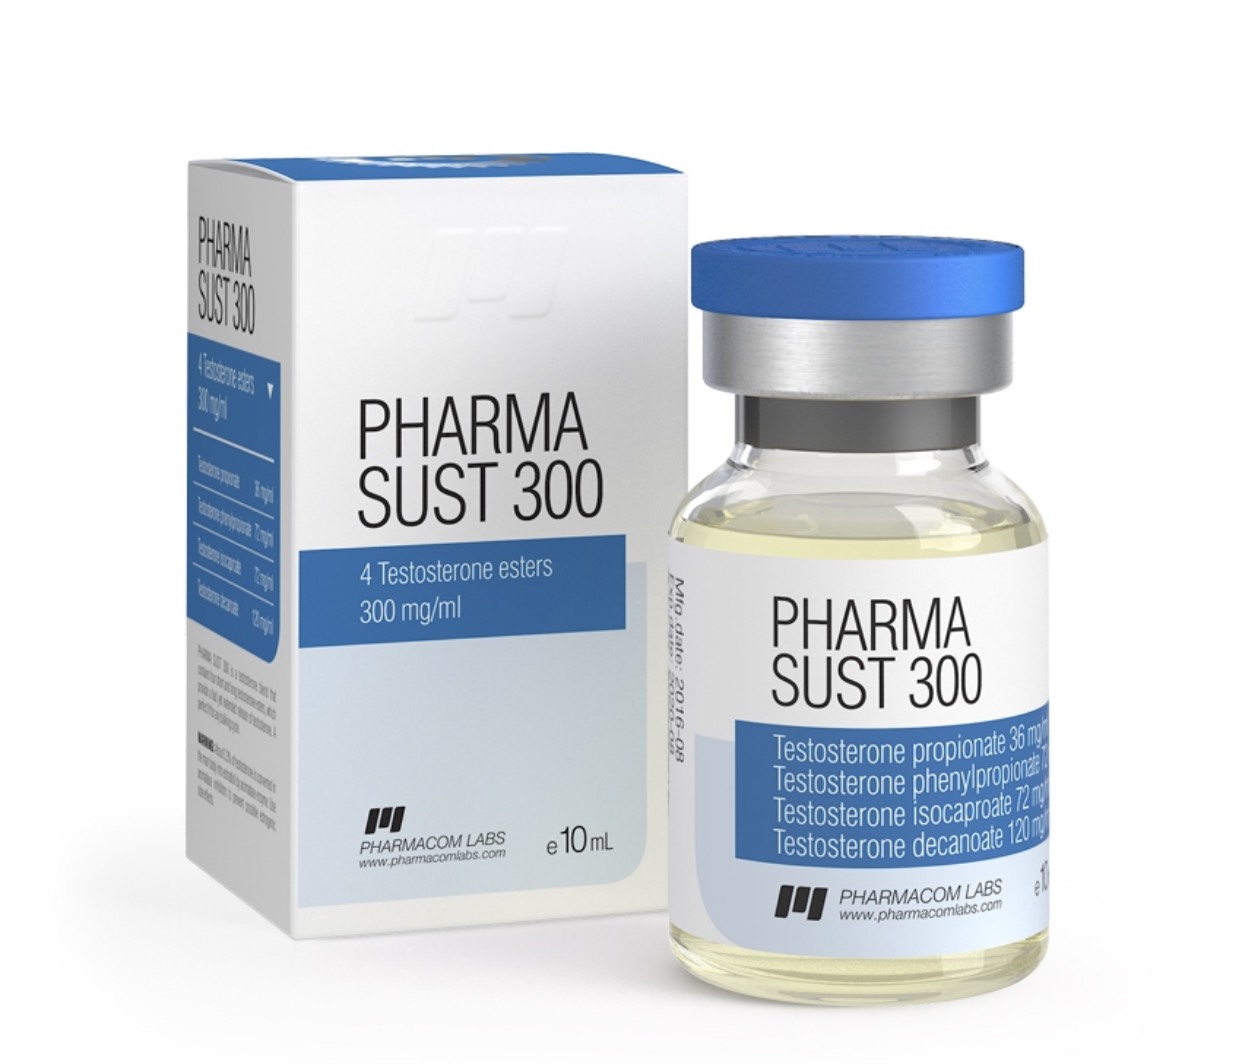 pharma-sust-300-sustanon-300mg-ml-hang-pharmacomlabs-lo-10ml